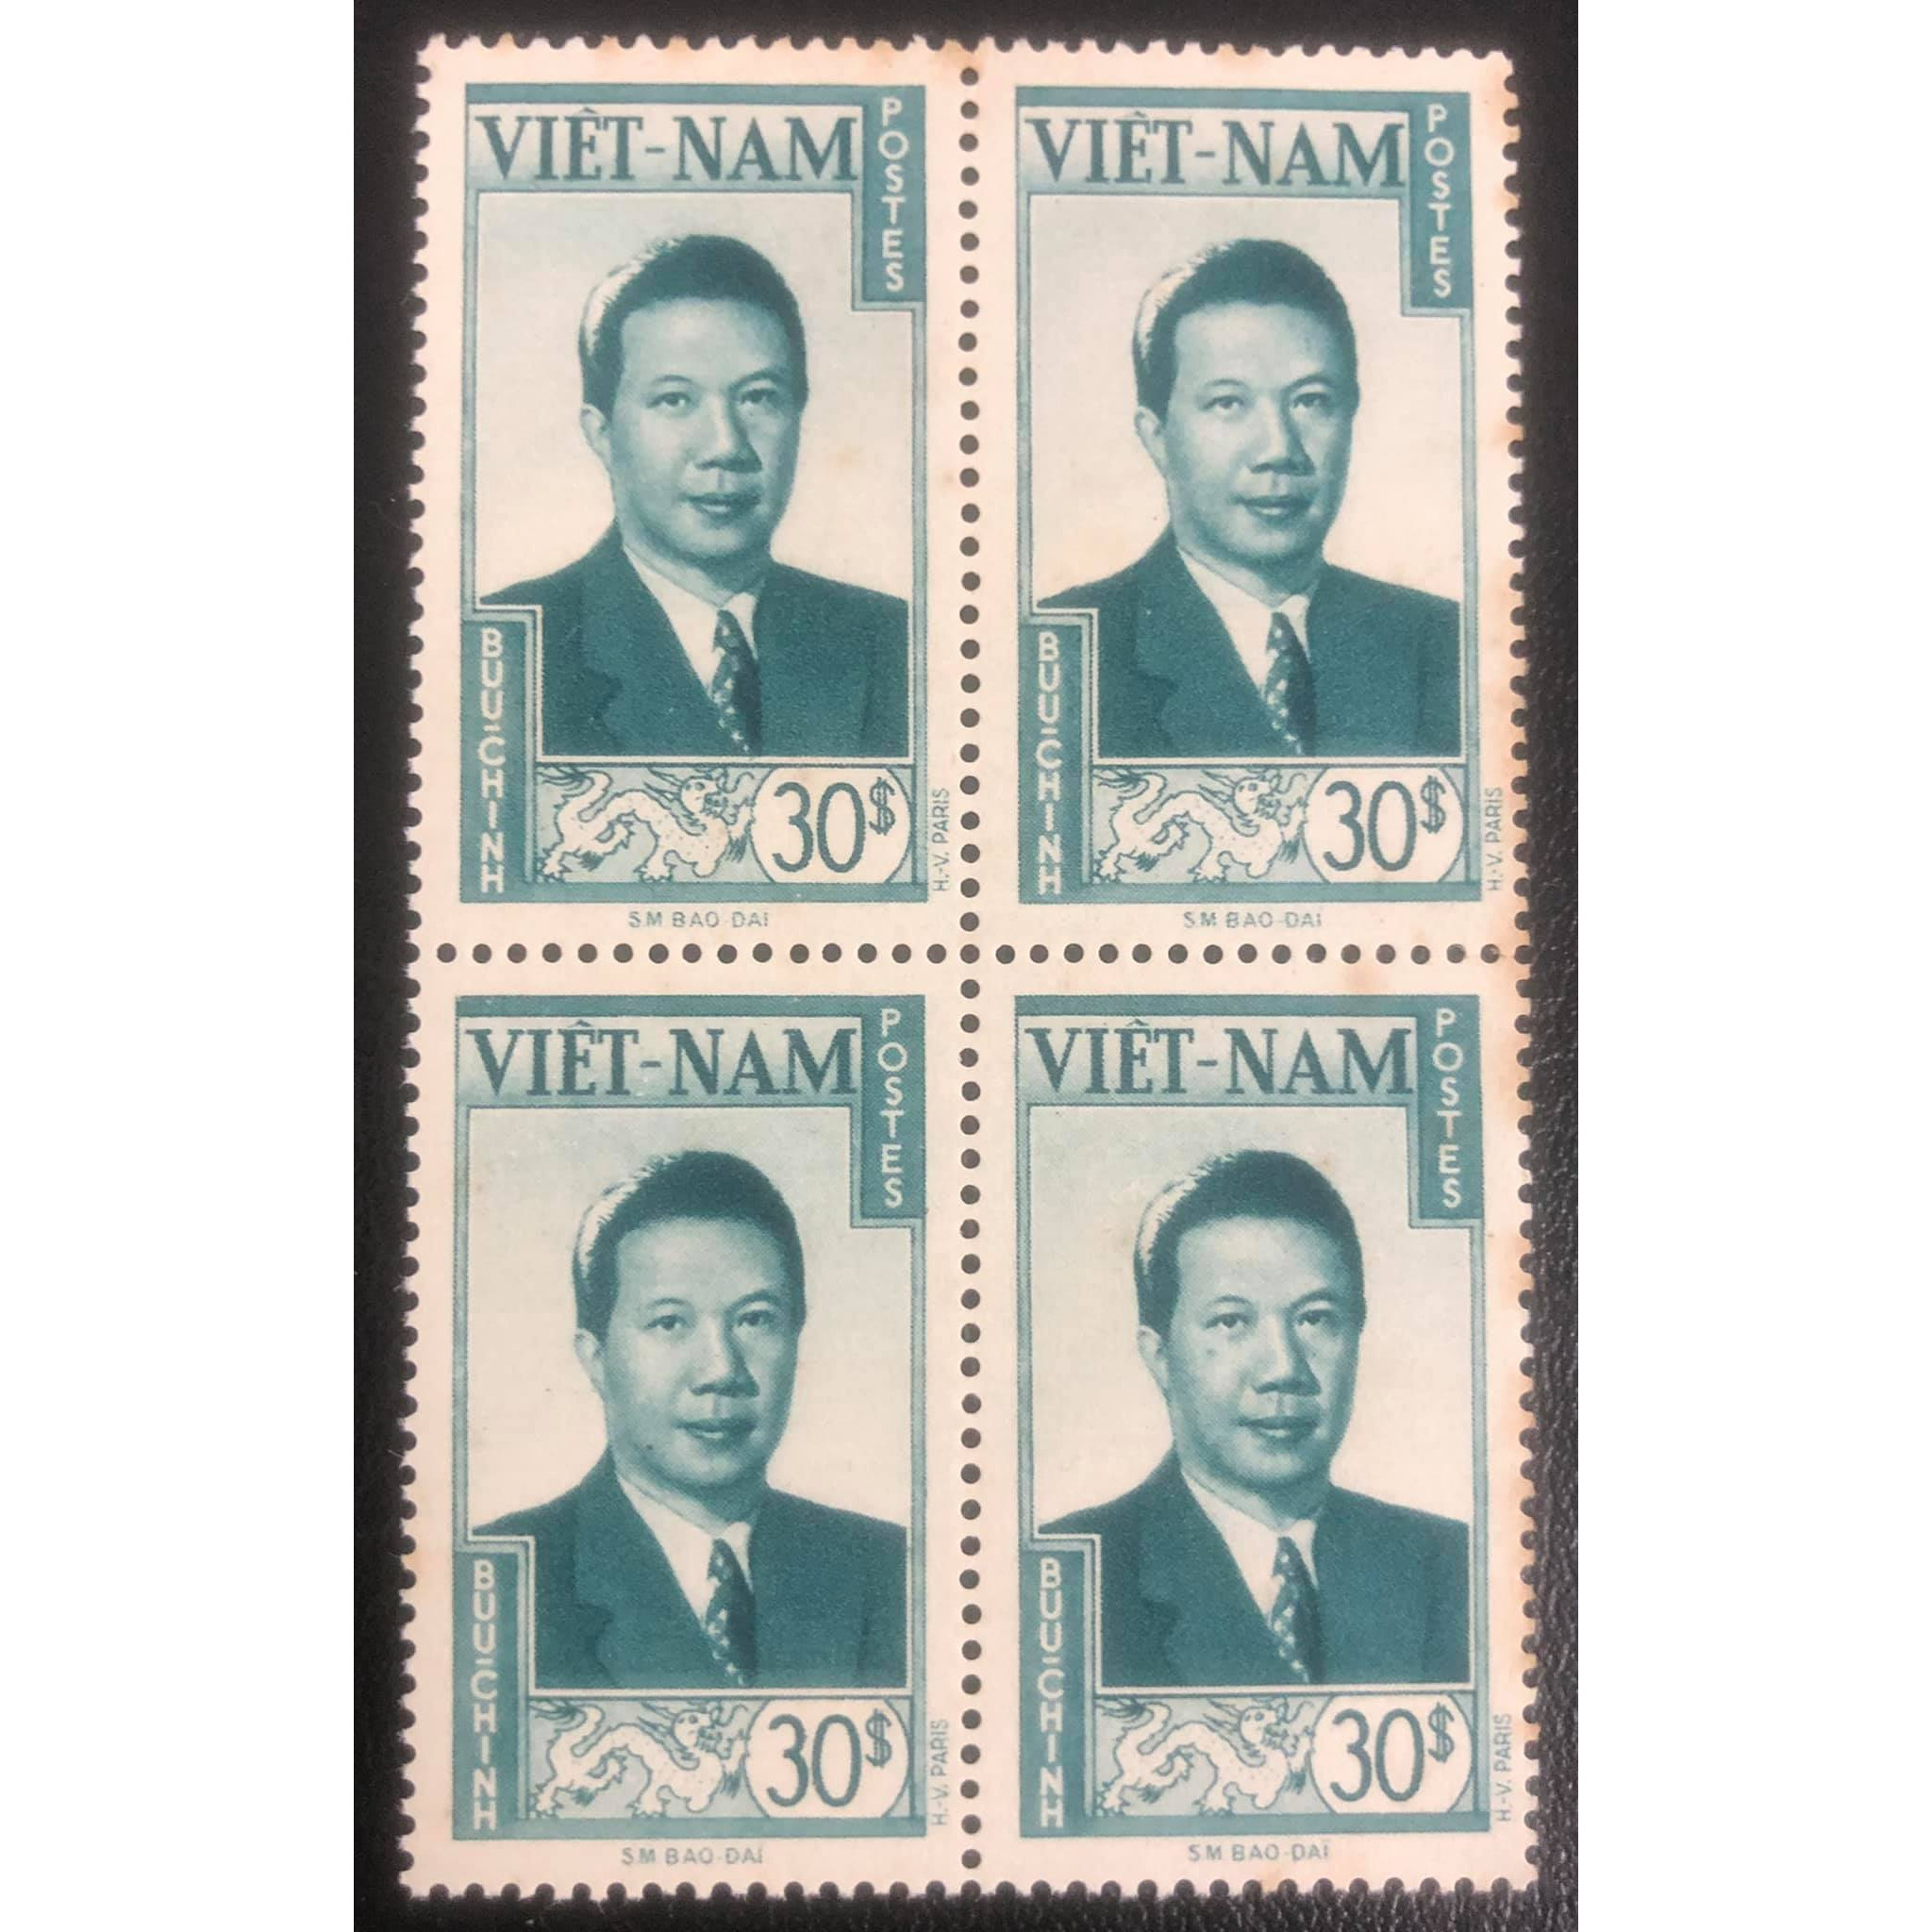 Khối 4 con tem Đông Dương in chân dung vua Bảo Đại màu xanh lá đậm, vị vua cuối cùng của phong kiến Việt Nam